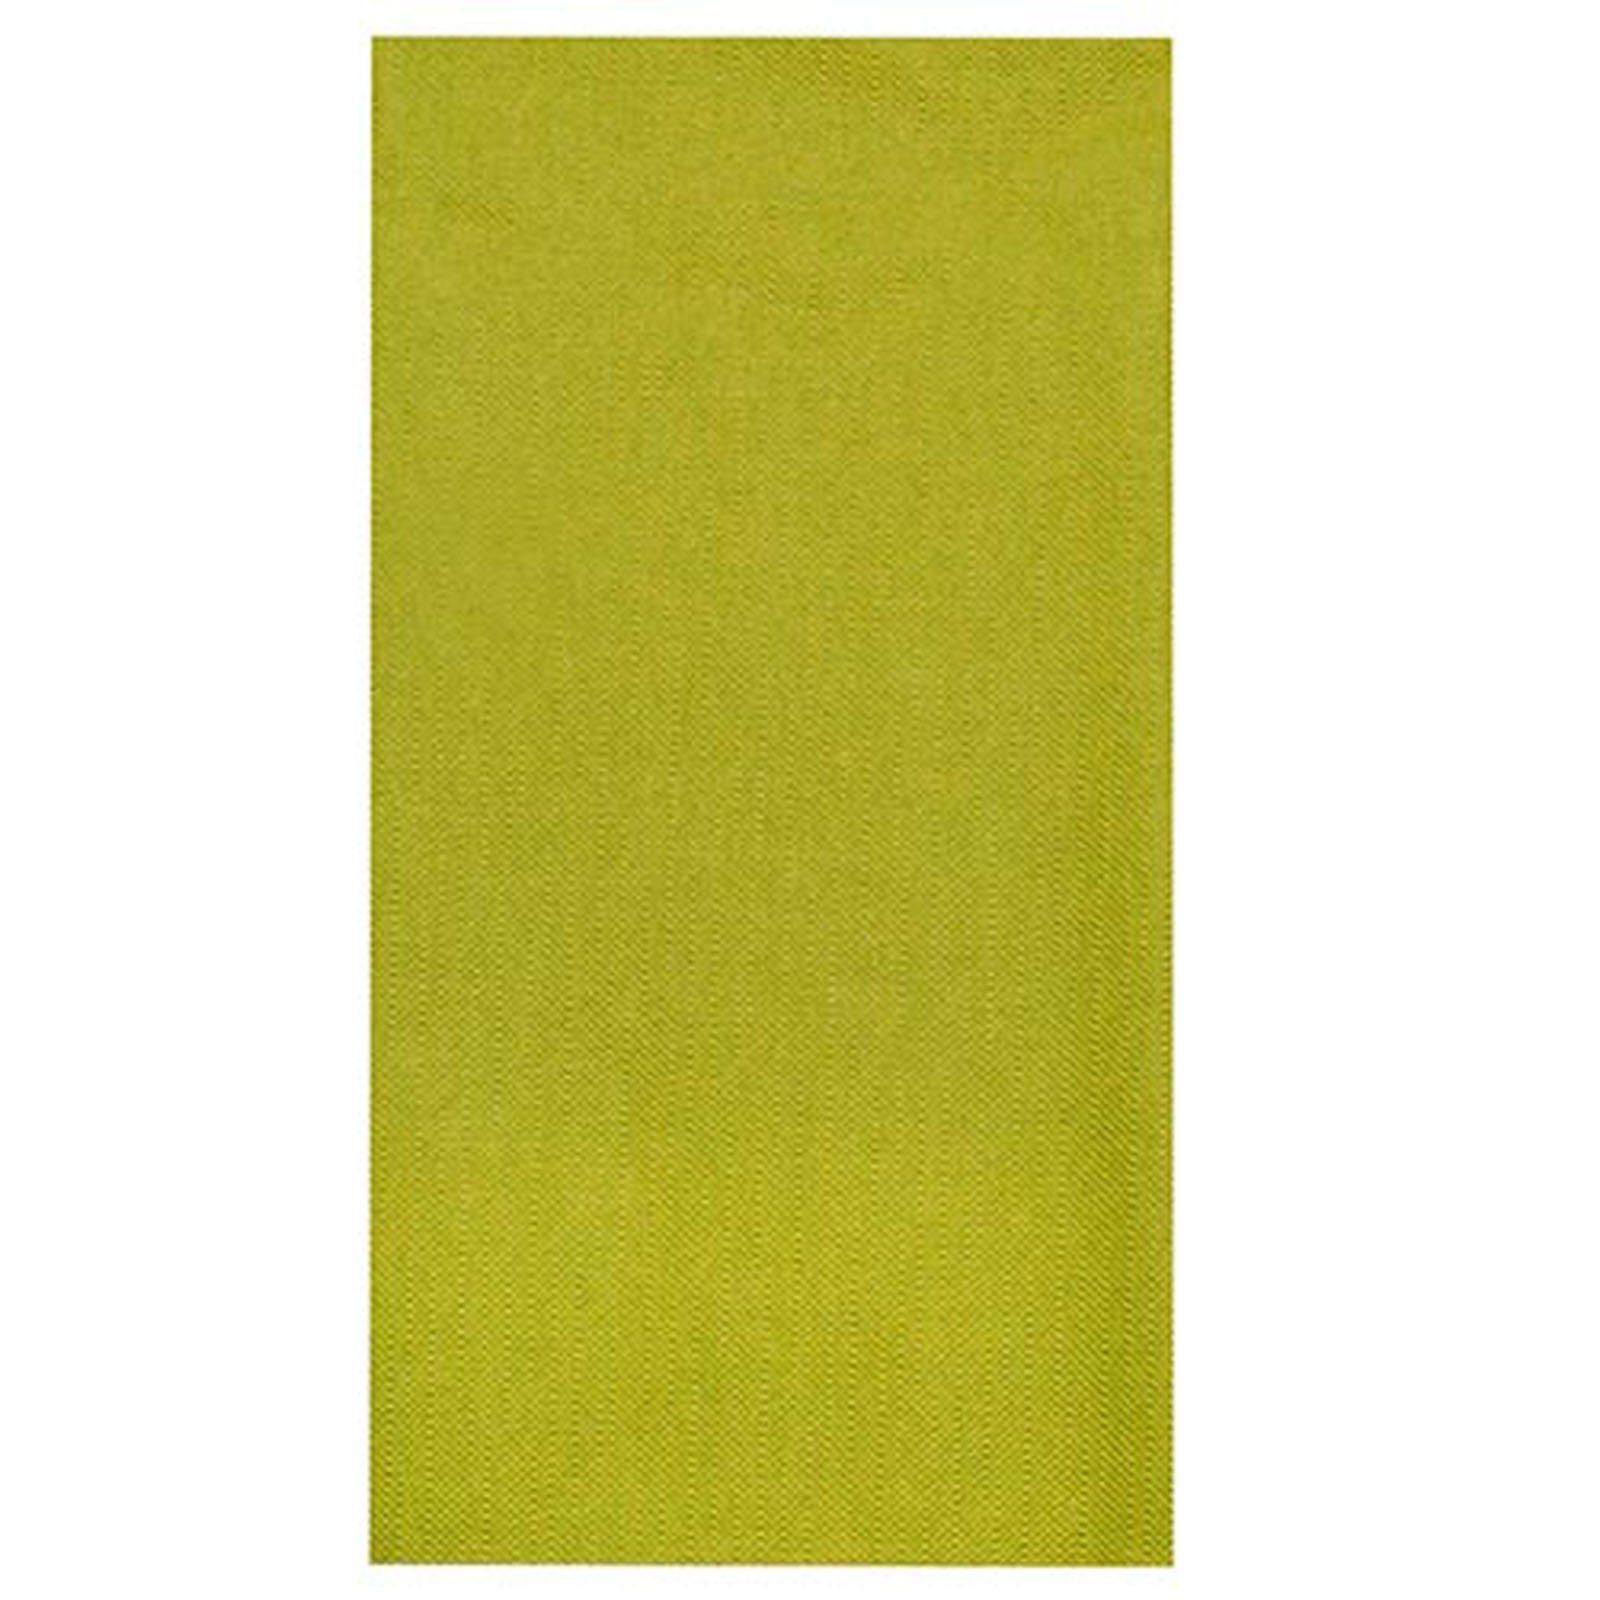 PAPSTAR Tischdecke 10 Stück Tissue Tischdecke, olivgrün ROYAL Collection 120 x 180 cm